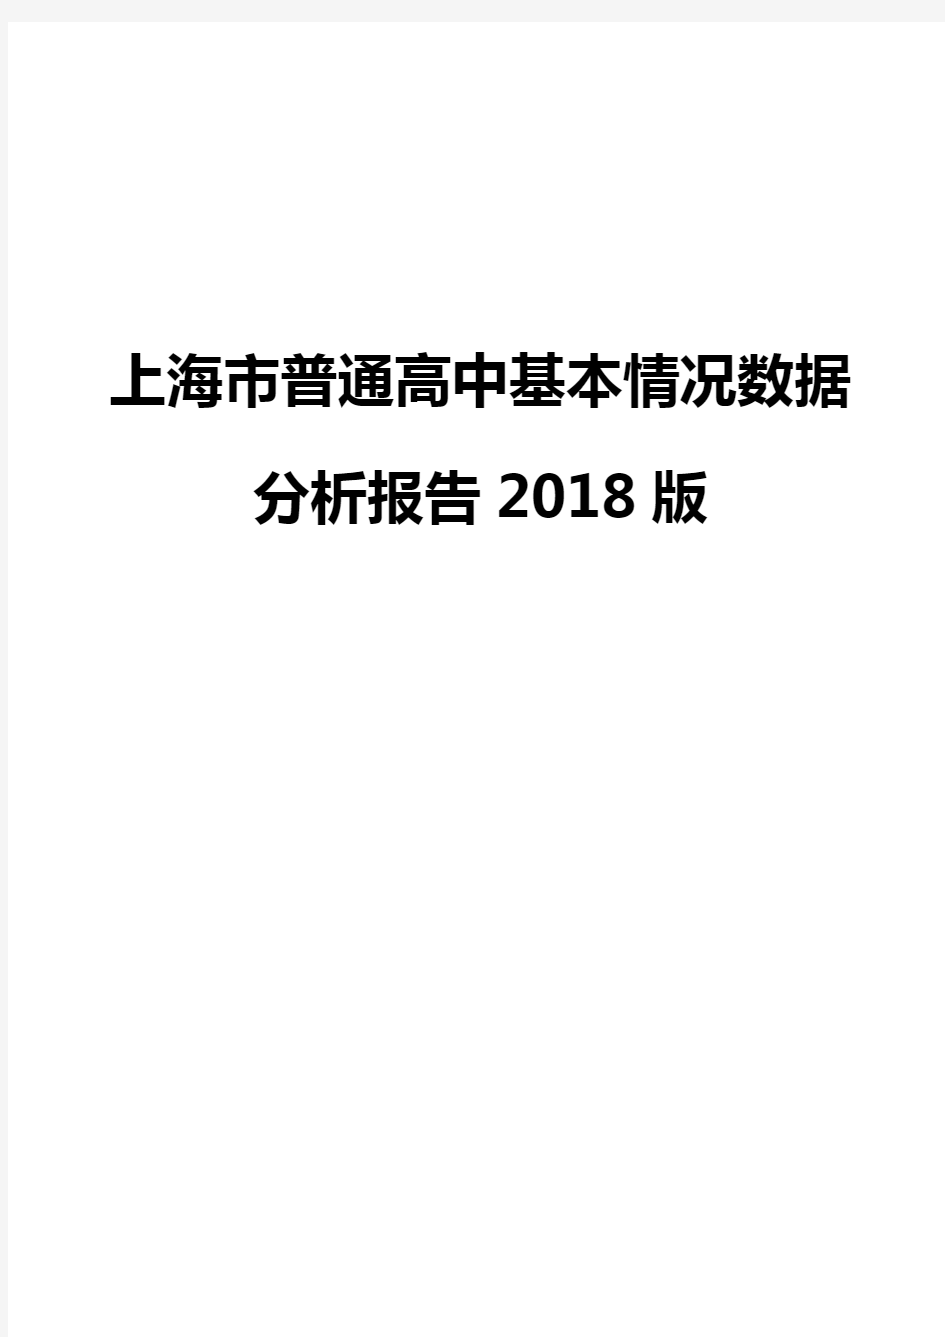 上海市普通高中基本情况数据分析报告2018版